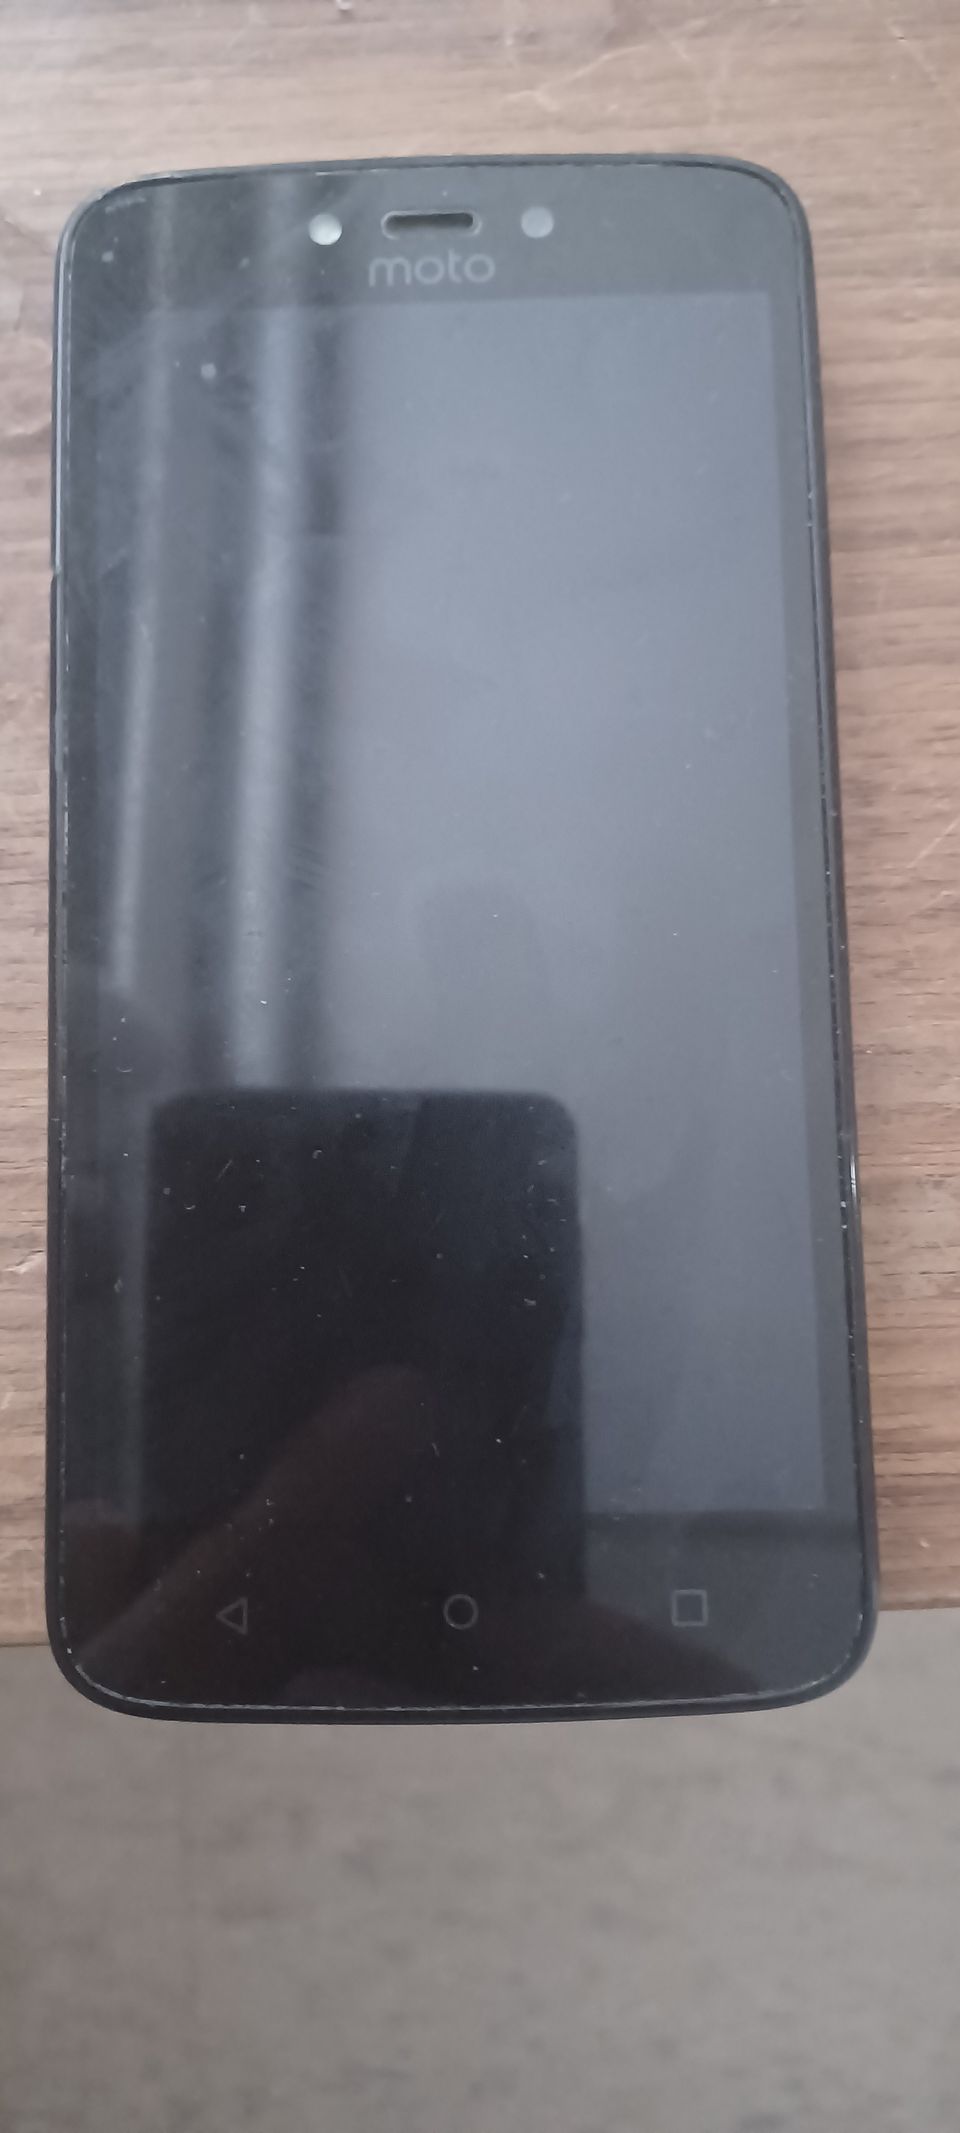 Motorola musta älypuhelin toimiva ja siisti